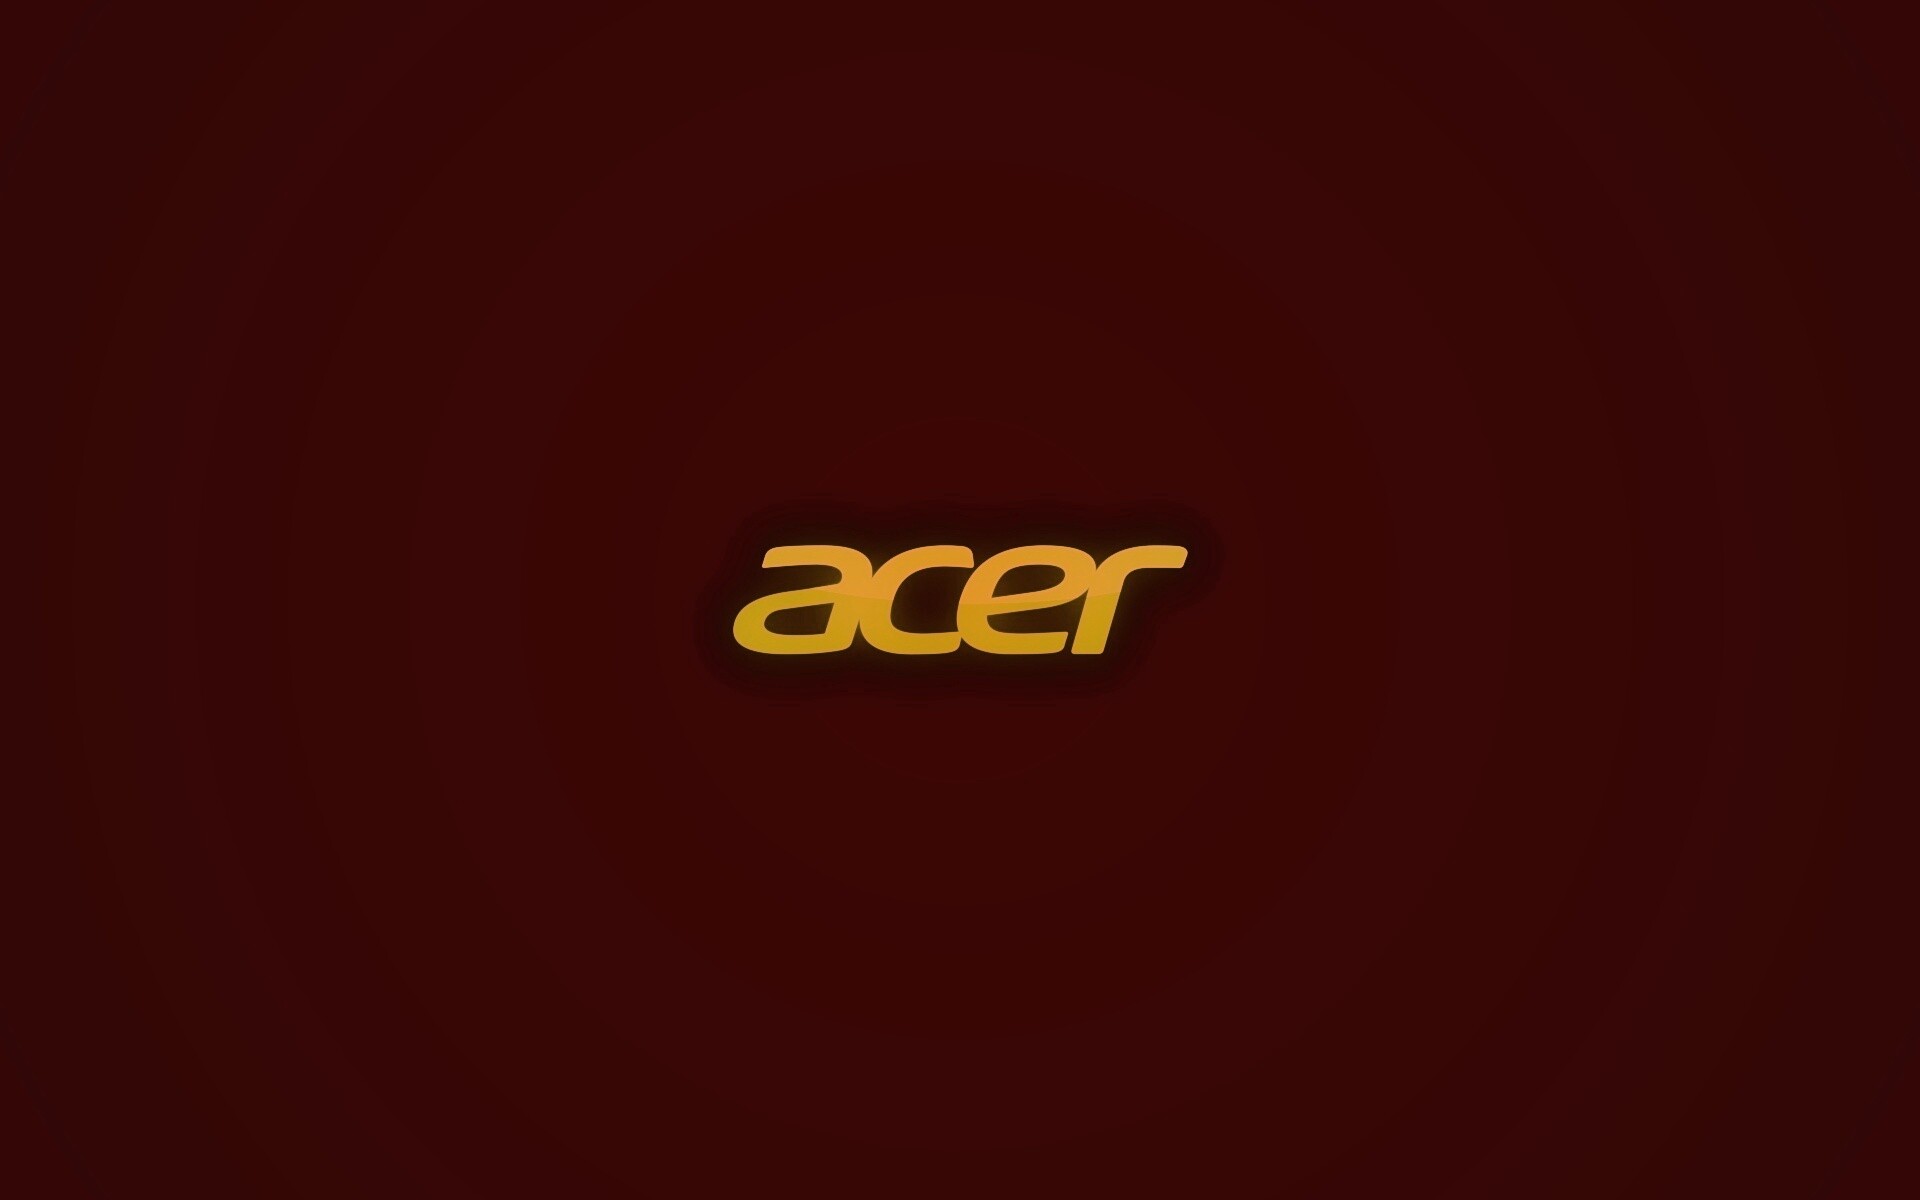 Acer логотип скачать